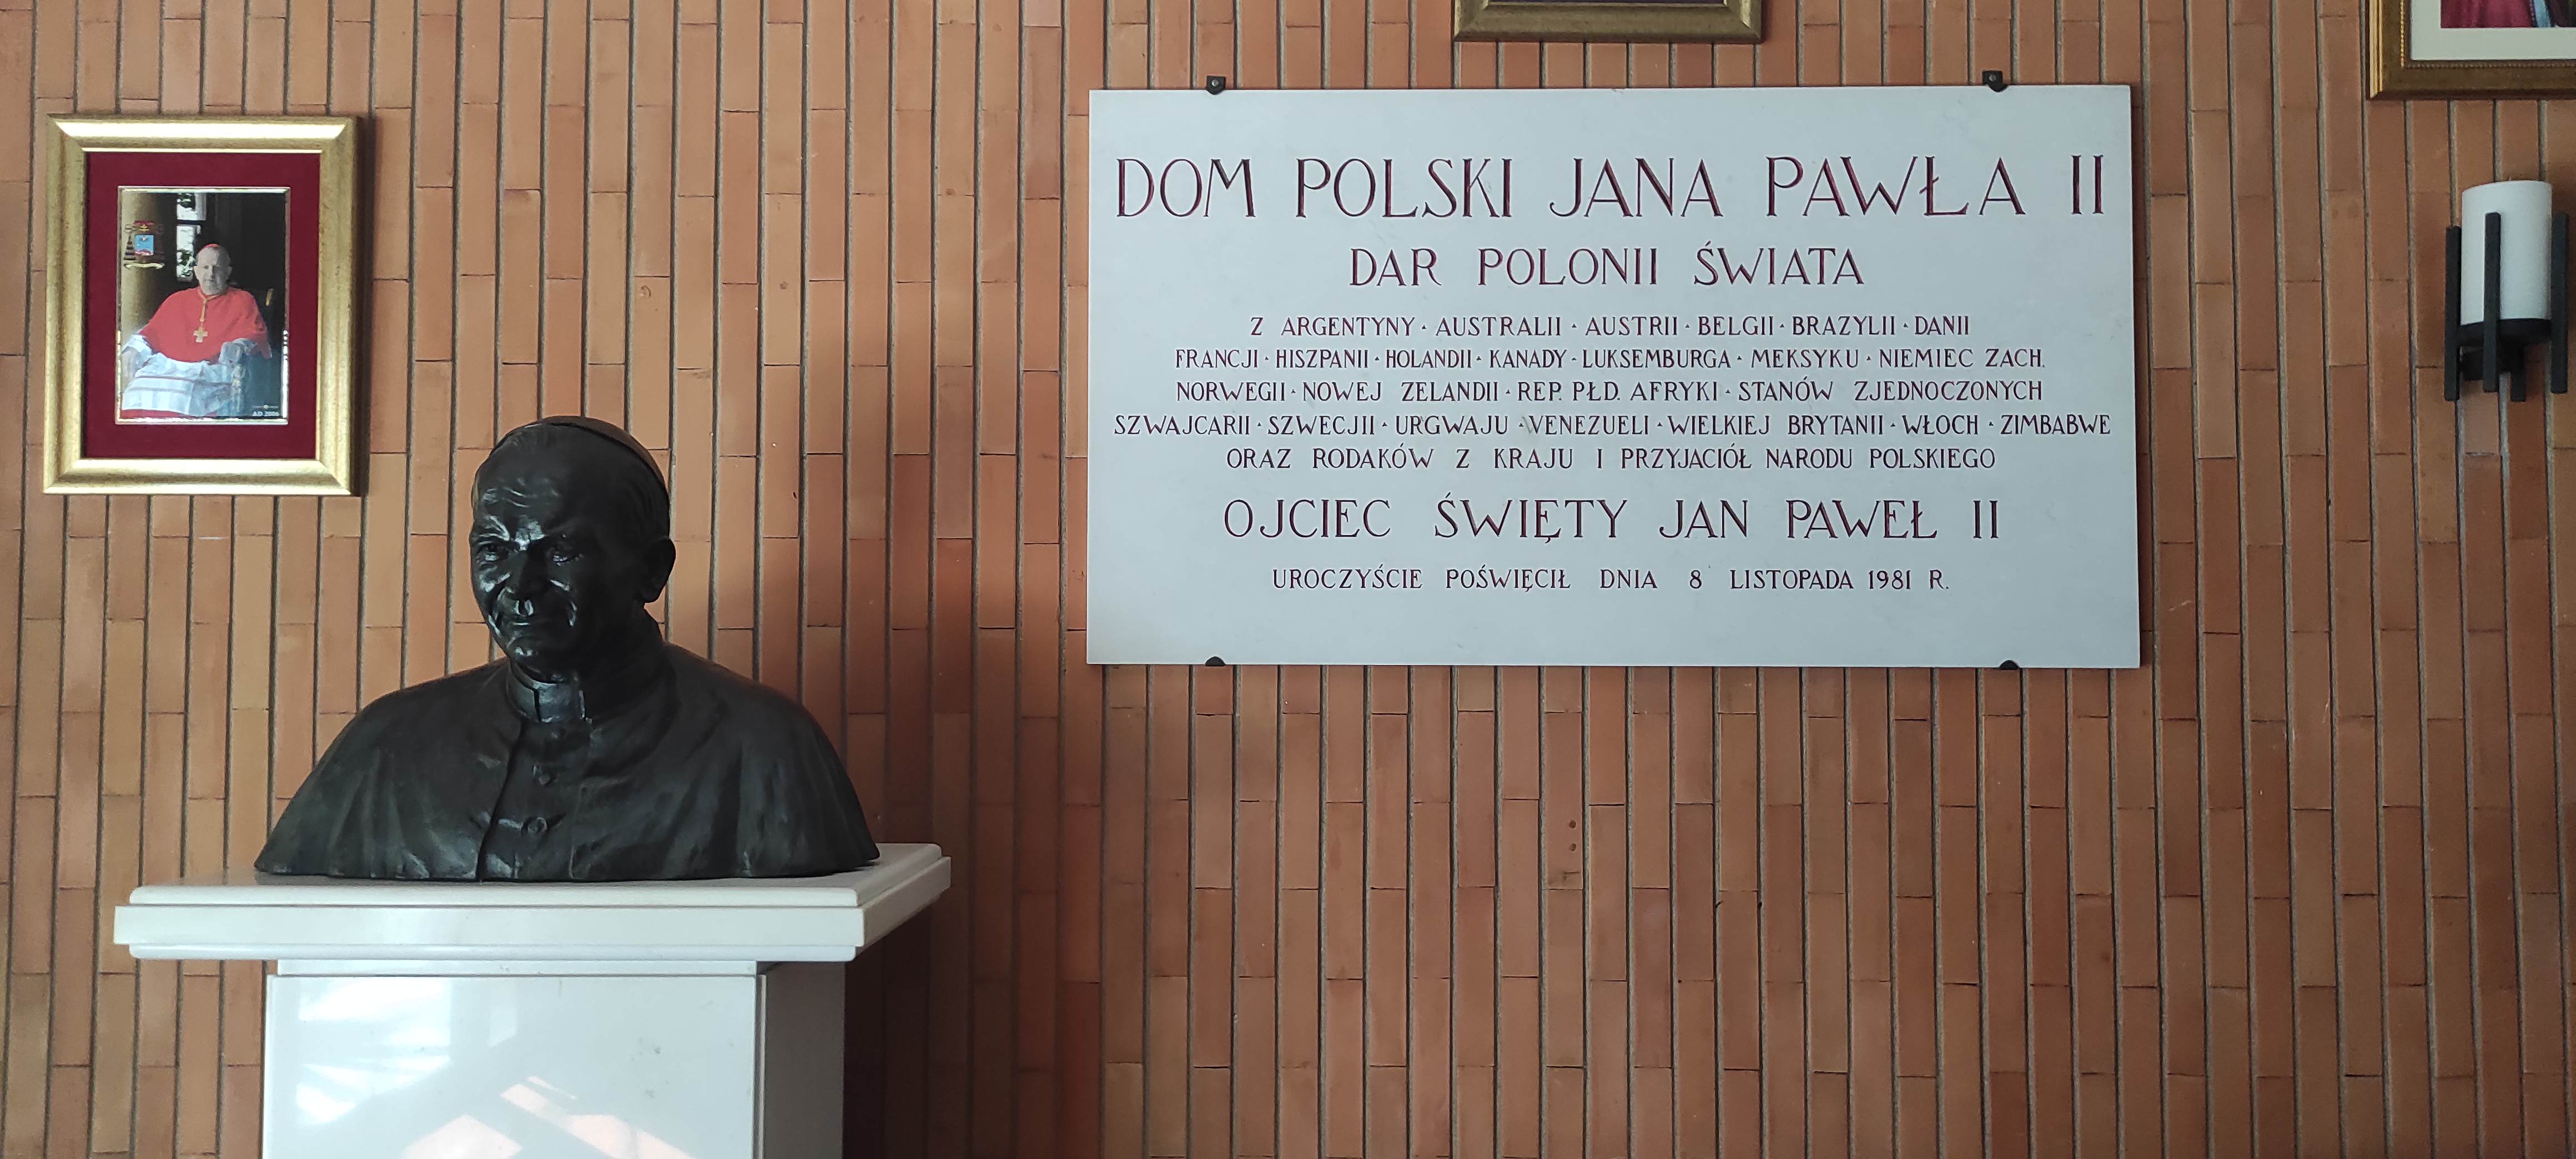 Fotografia przedstawiająca Dom Polski Jana Pawła II w Rzymie